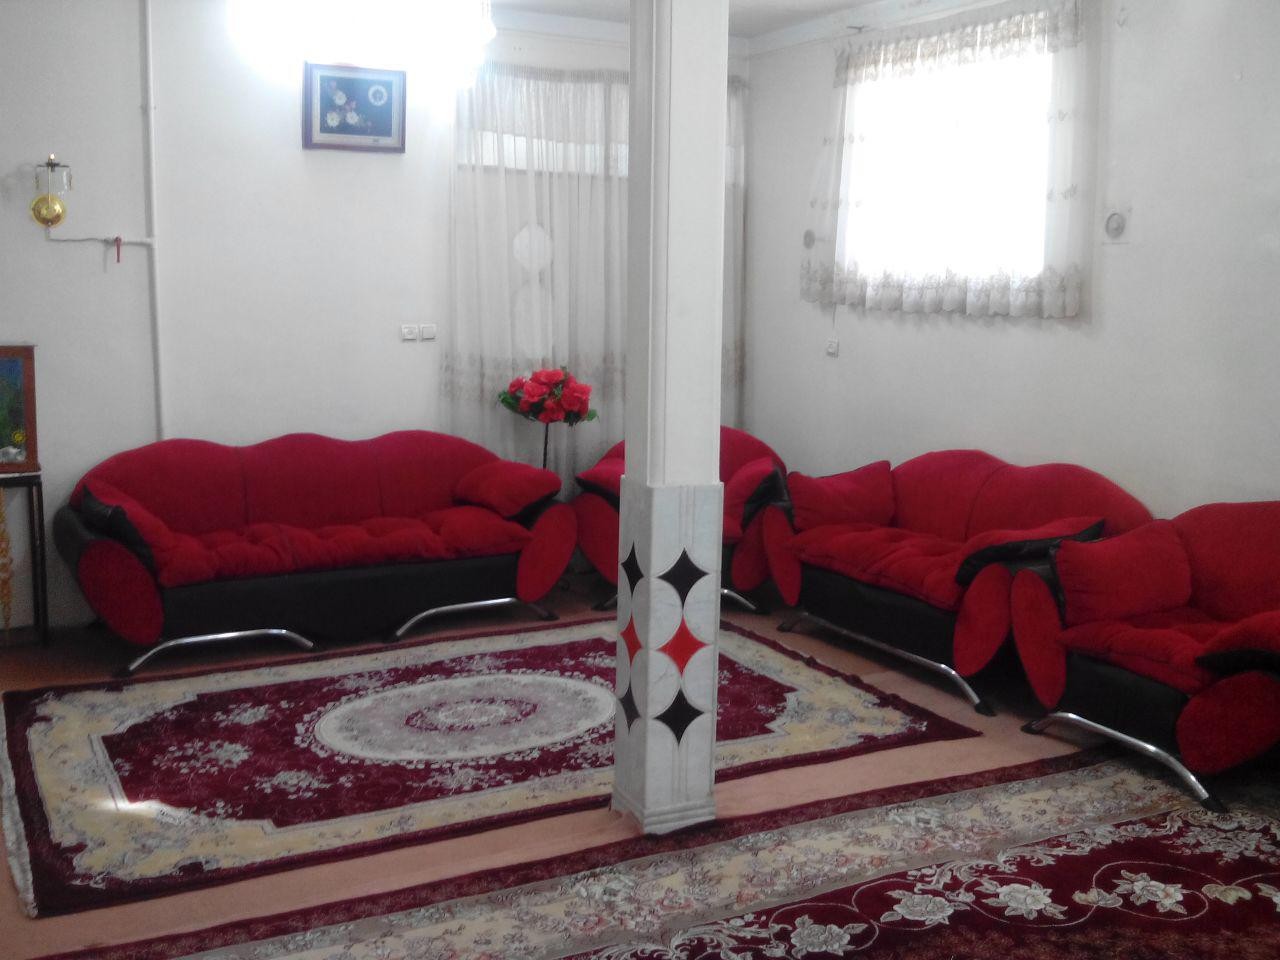 شهری اجاره منزل مبله ویلایی در حصار همدان